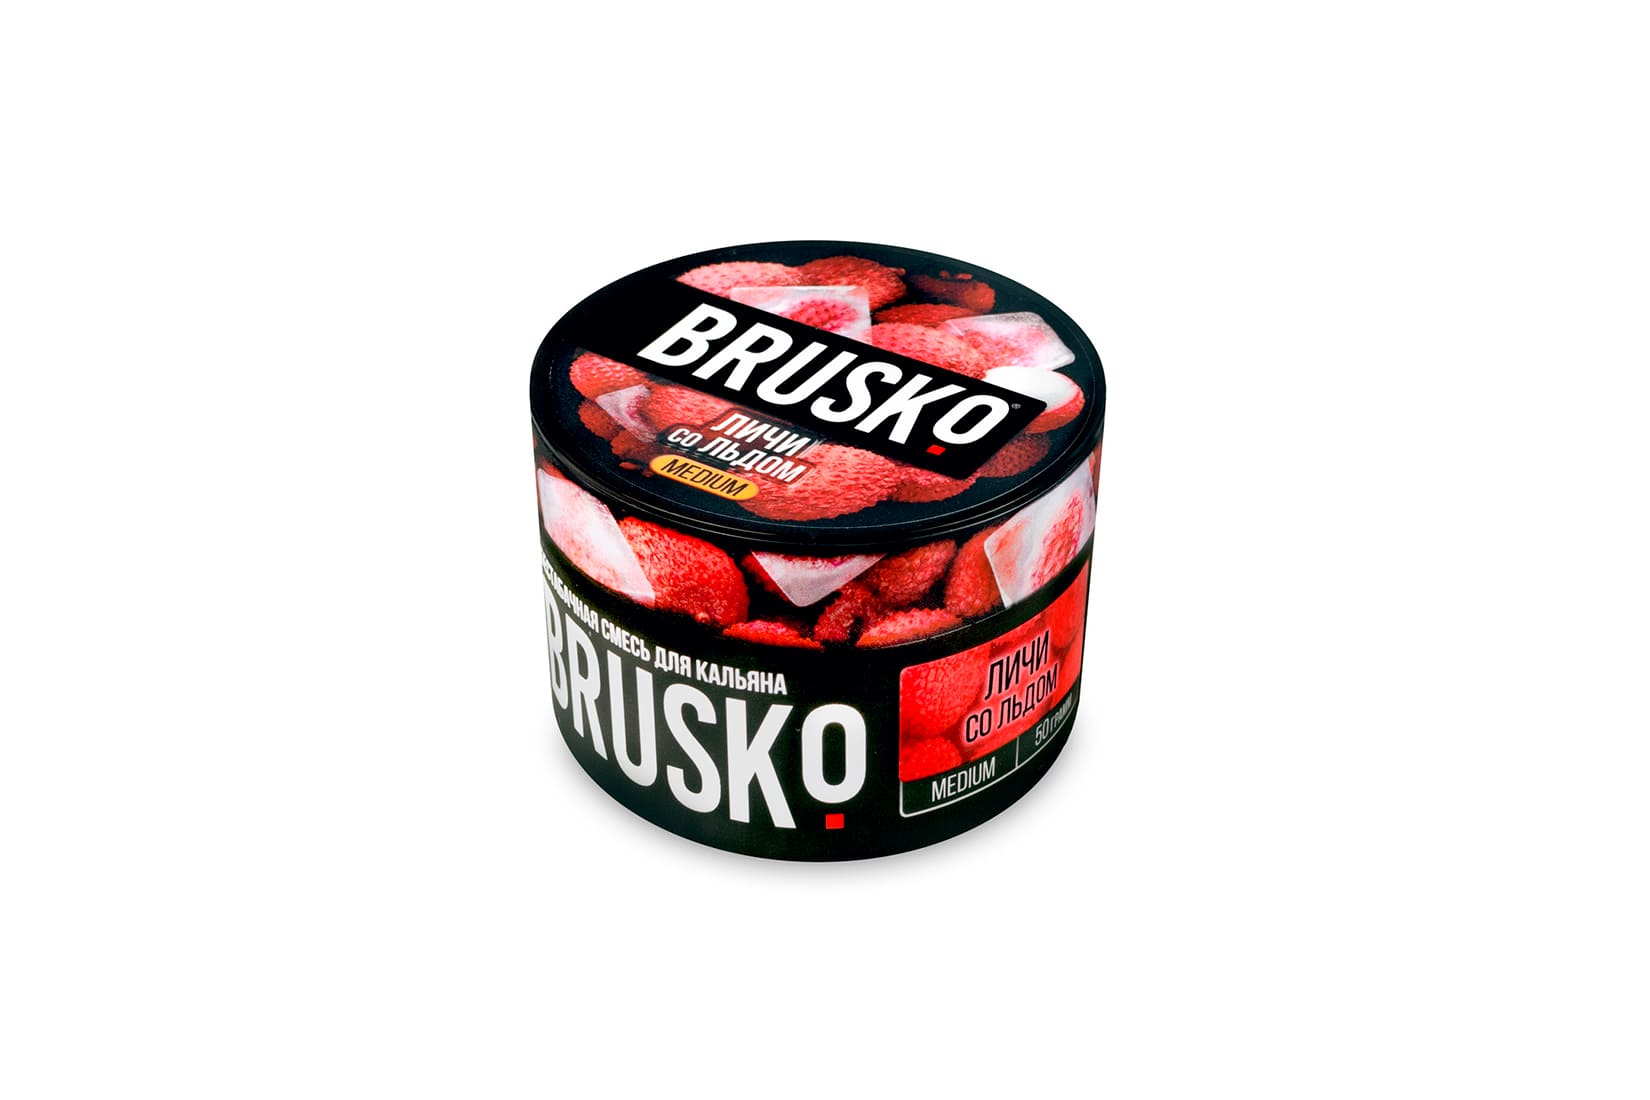 Бестабачная смесь для кальяна Brusko Личи со льдом – описание, отзывы, миксы